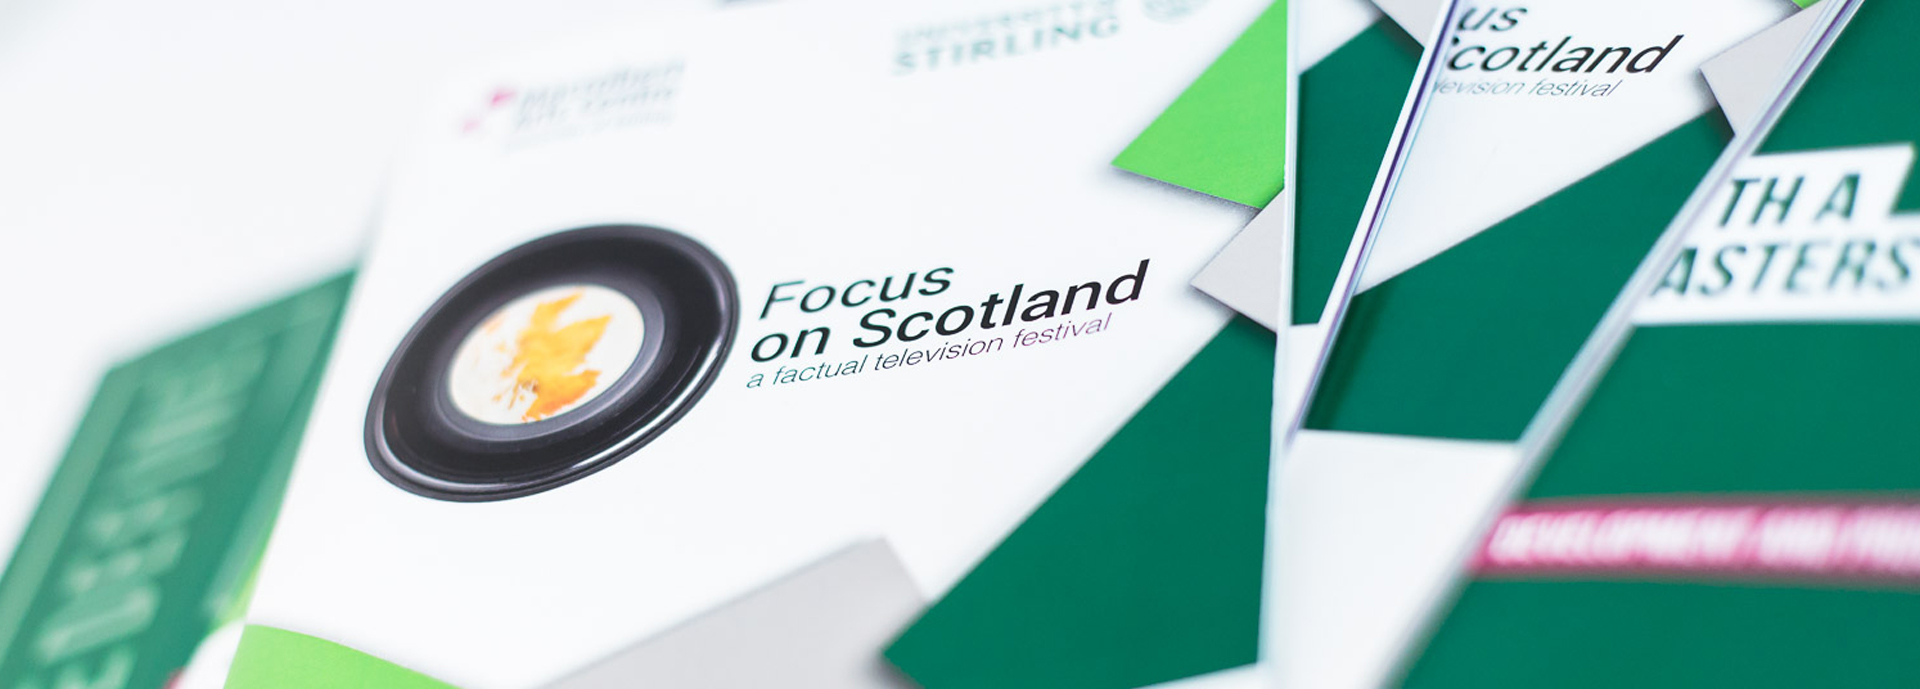 focus on scotland leaflets